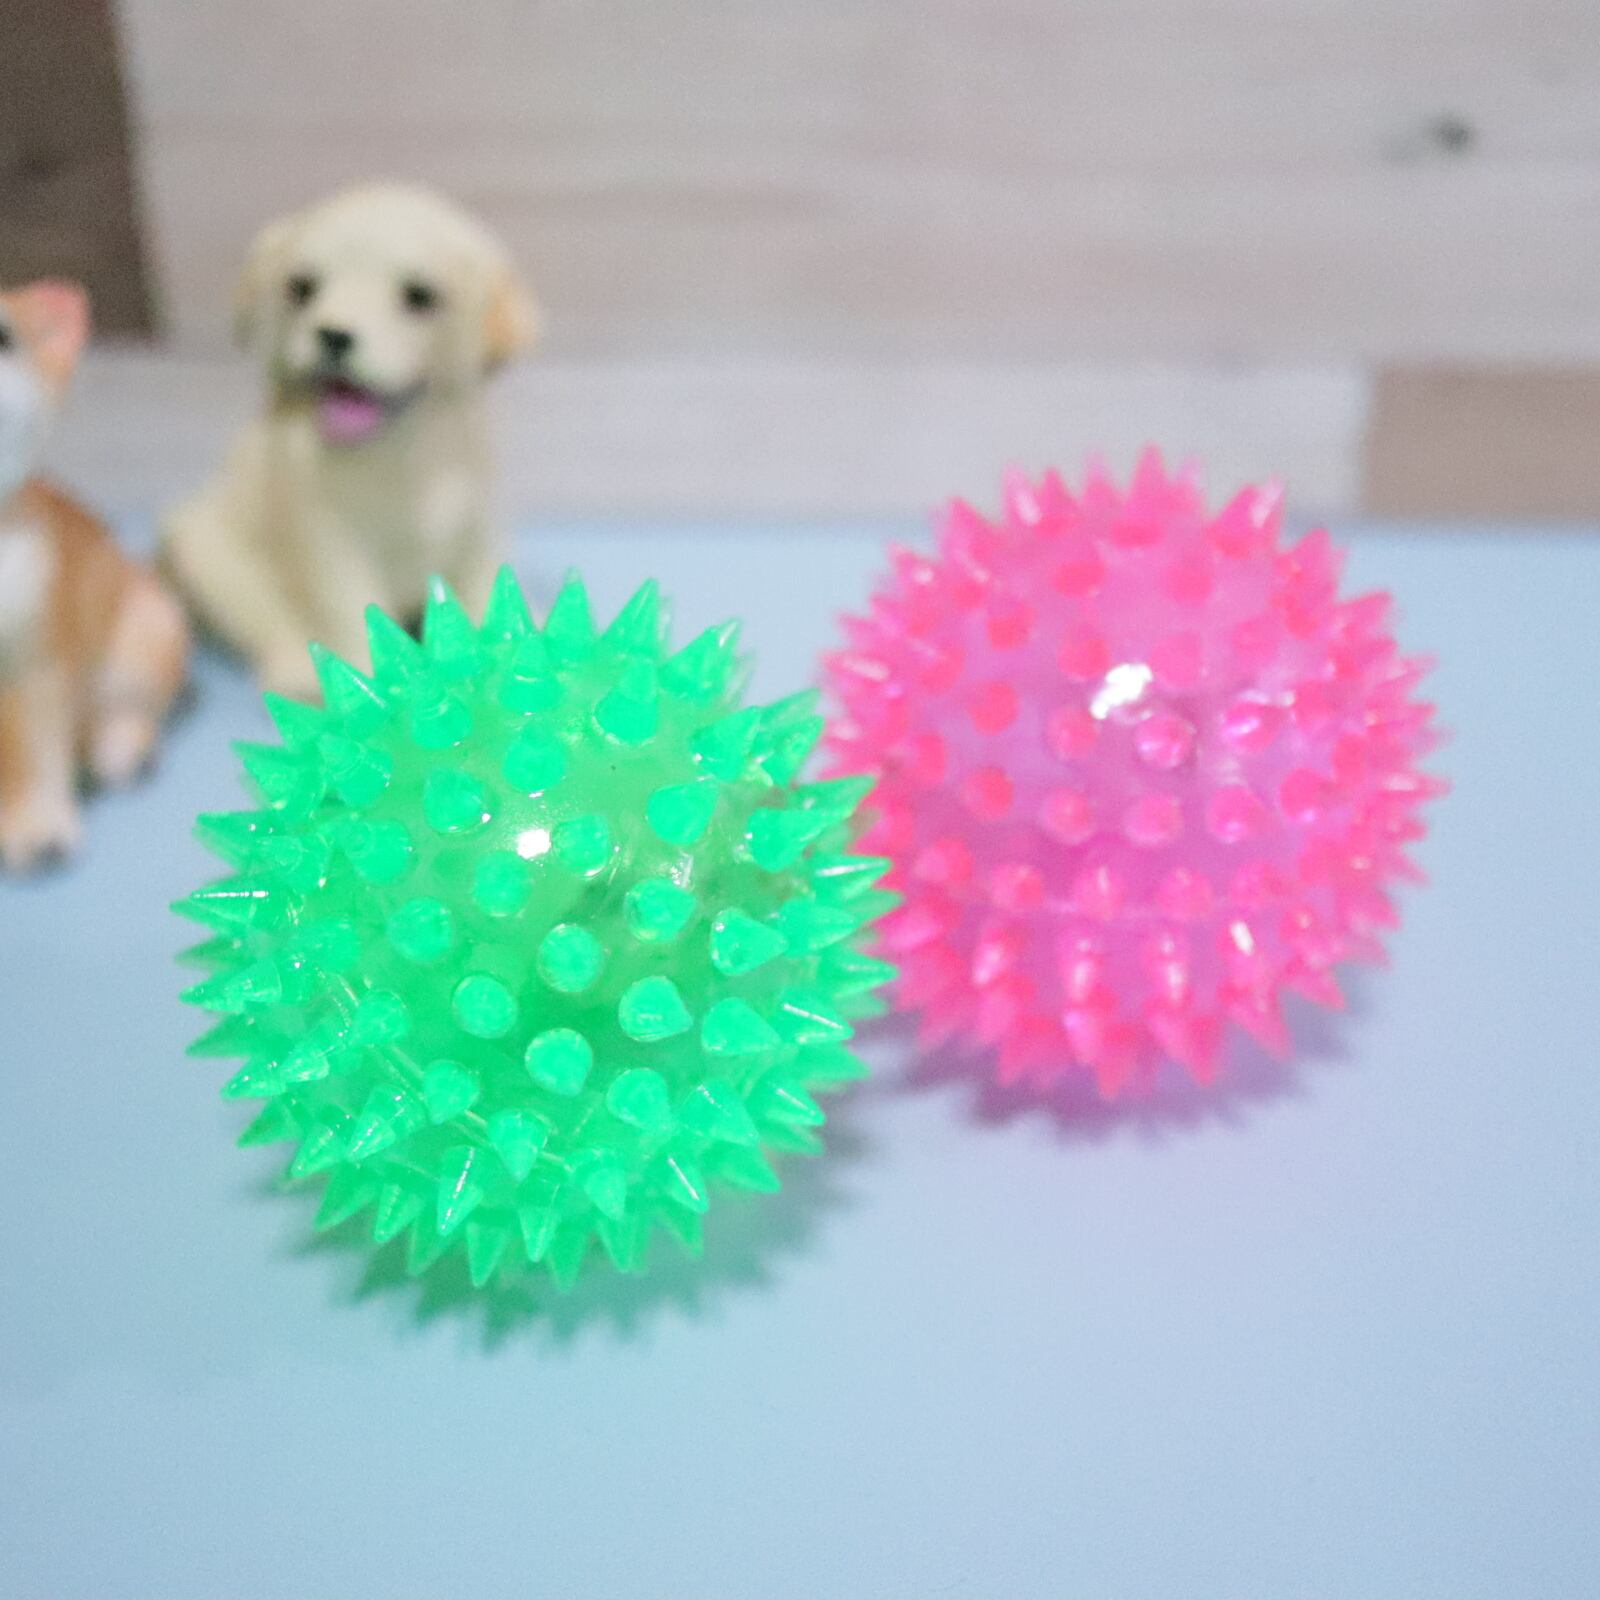 ラバー ボール 犬 おもちゃ 鈴入り 玩具 ペット ストレス 発散 小型犬